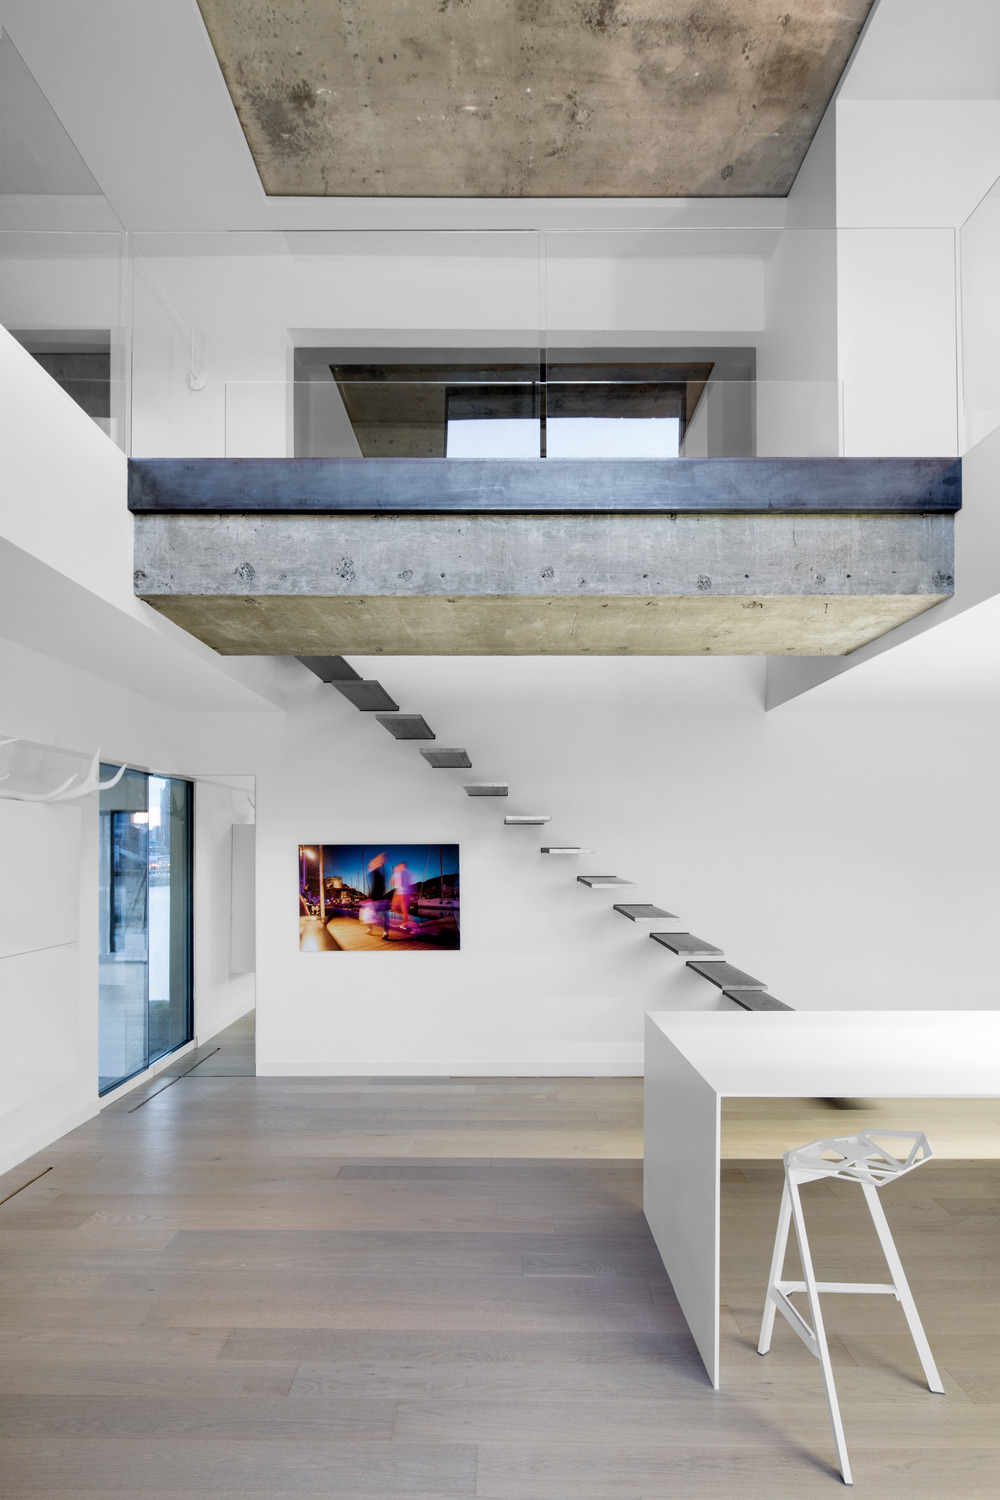 Iconic Moshe Safdie Habitat 67 by Studio Practice-06